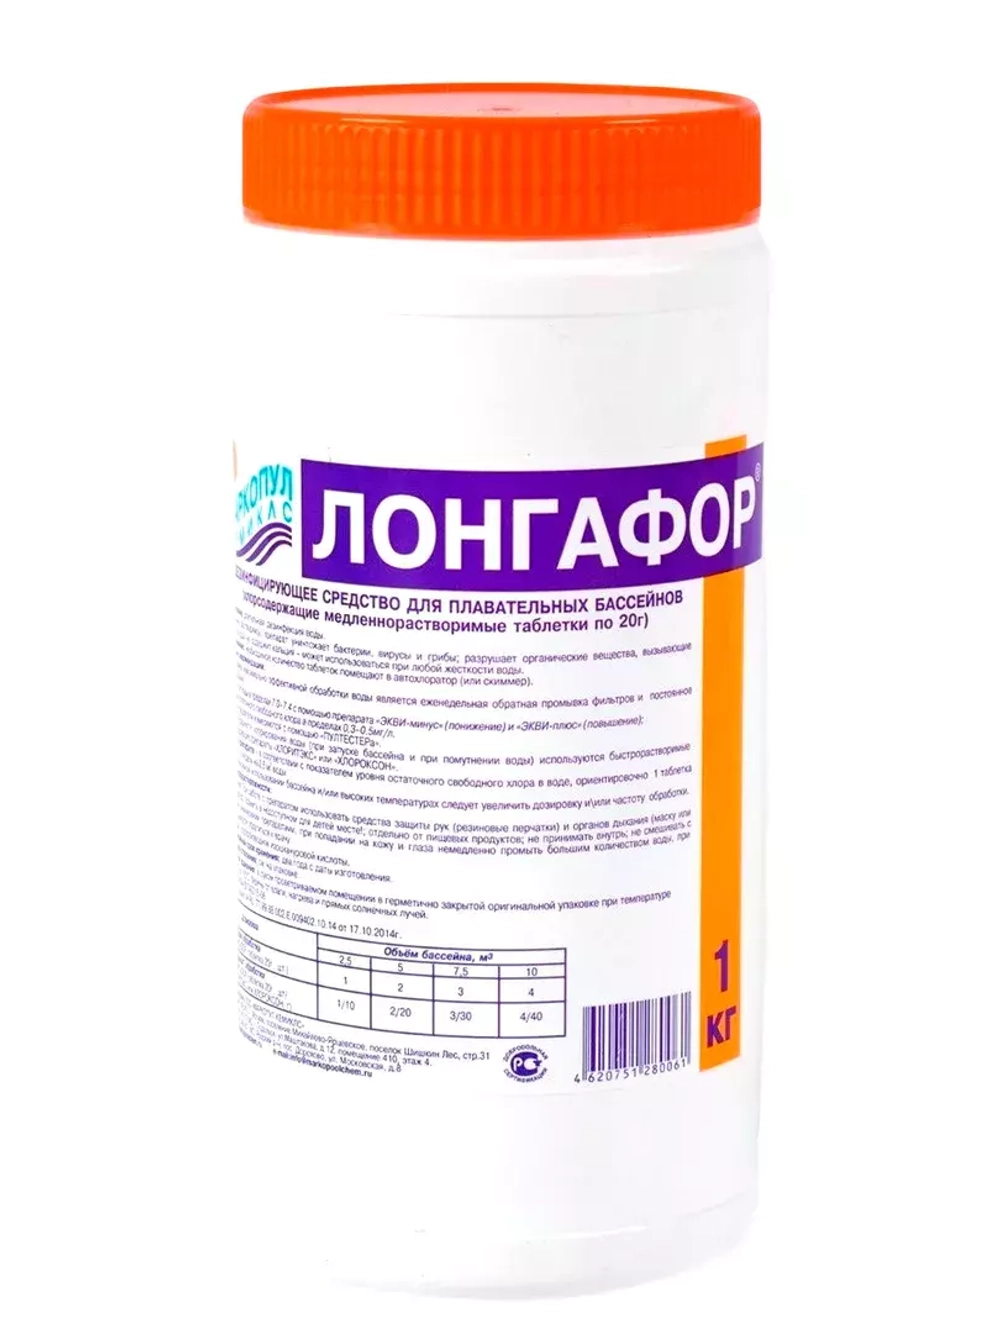 Лонгафор - Таблетки для бассейна хлорные по 20гр - 1кг - Медленнорастворимые - Маркопул Кемиклс